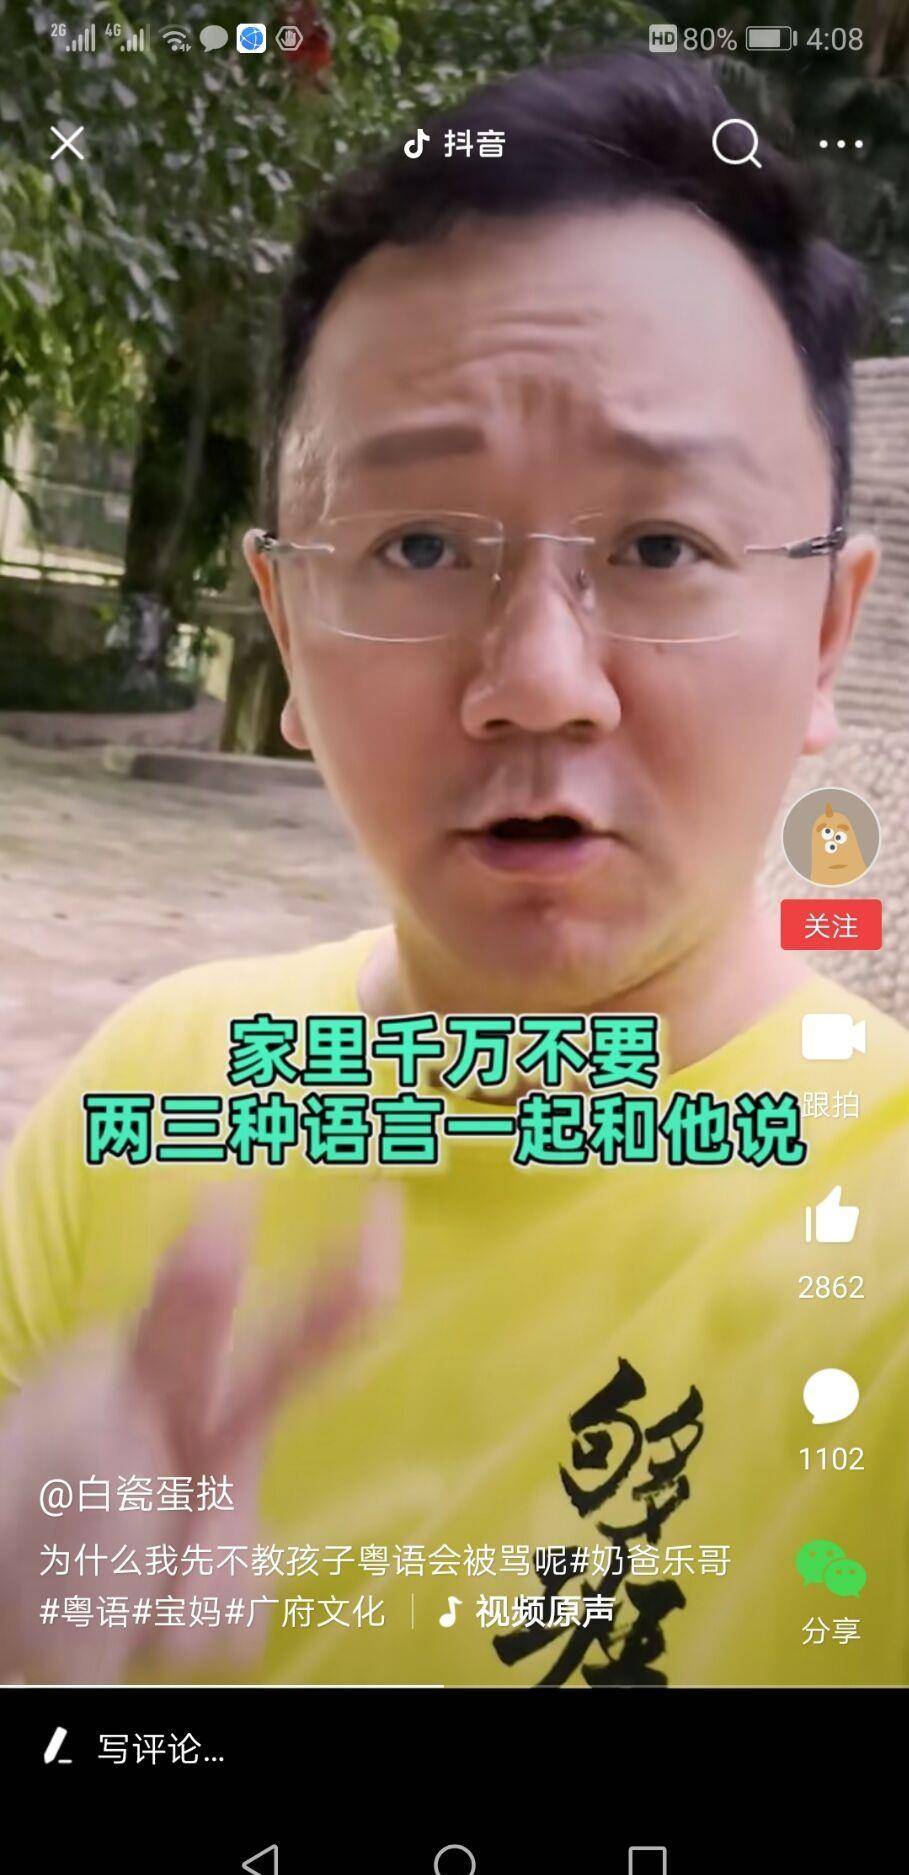 原创广东电视台节目主持人薛乐解析:为什么不教自己儿子说粤语